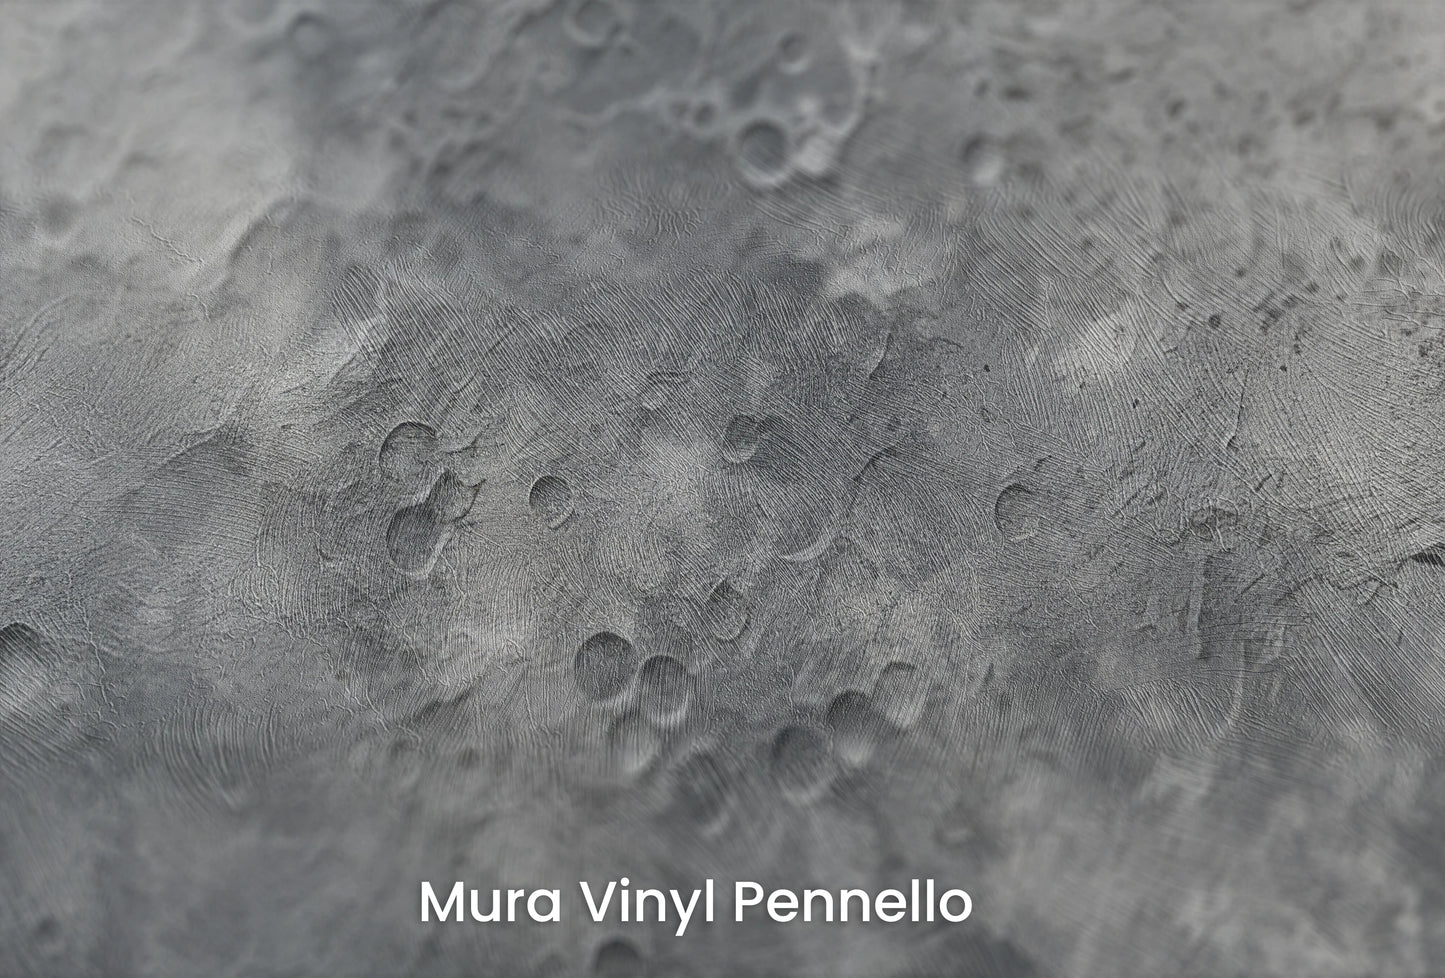 Zbliżenie na artystyczną fototapetę o nazwie Moon's Geography na podłożu Mura Vinyl Pennello - faktura pociągnięć pędzla malarskiego.